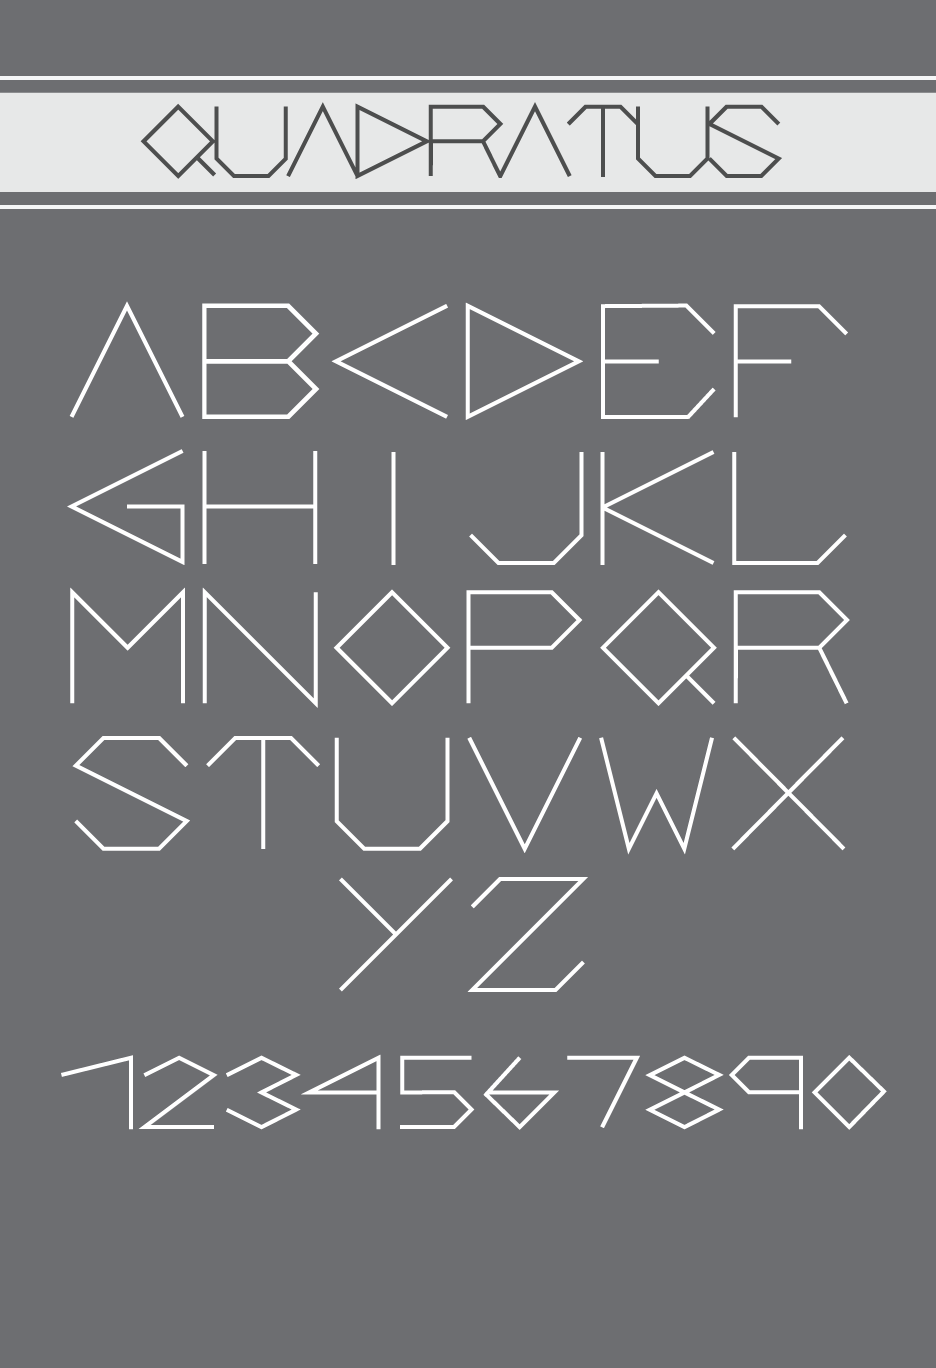 Typeface quadratus david villouta